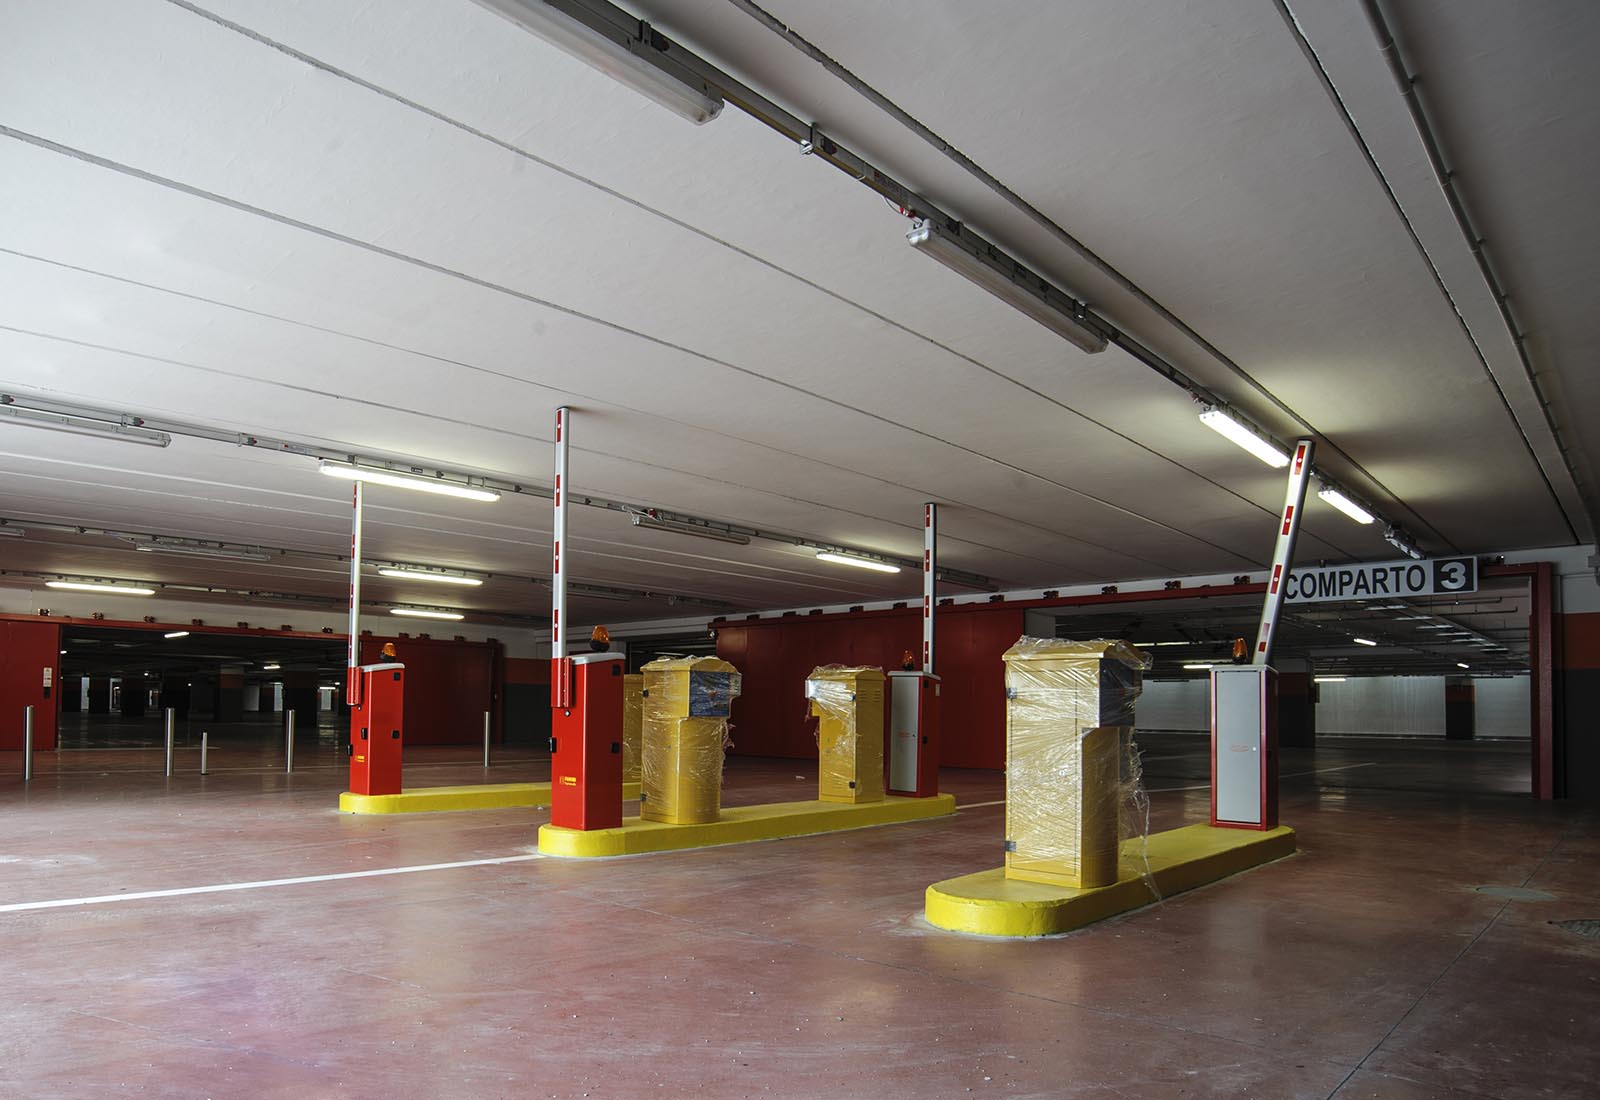 Underground garage in Adriano street Milan - Barriers on via Tognazzi side